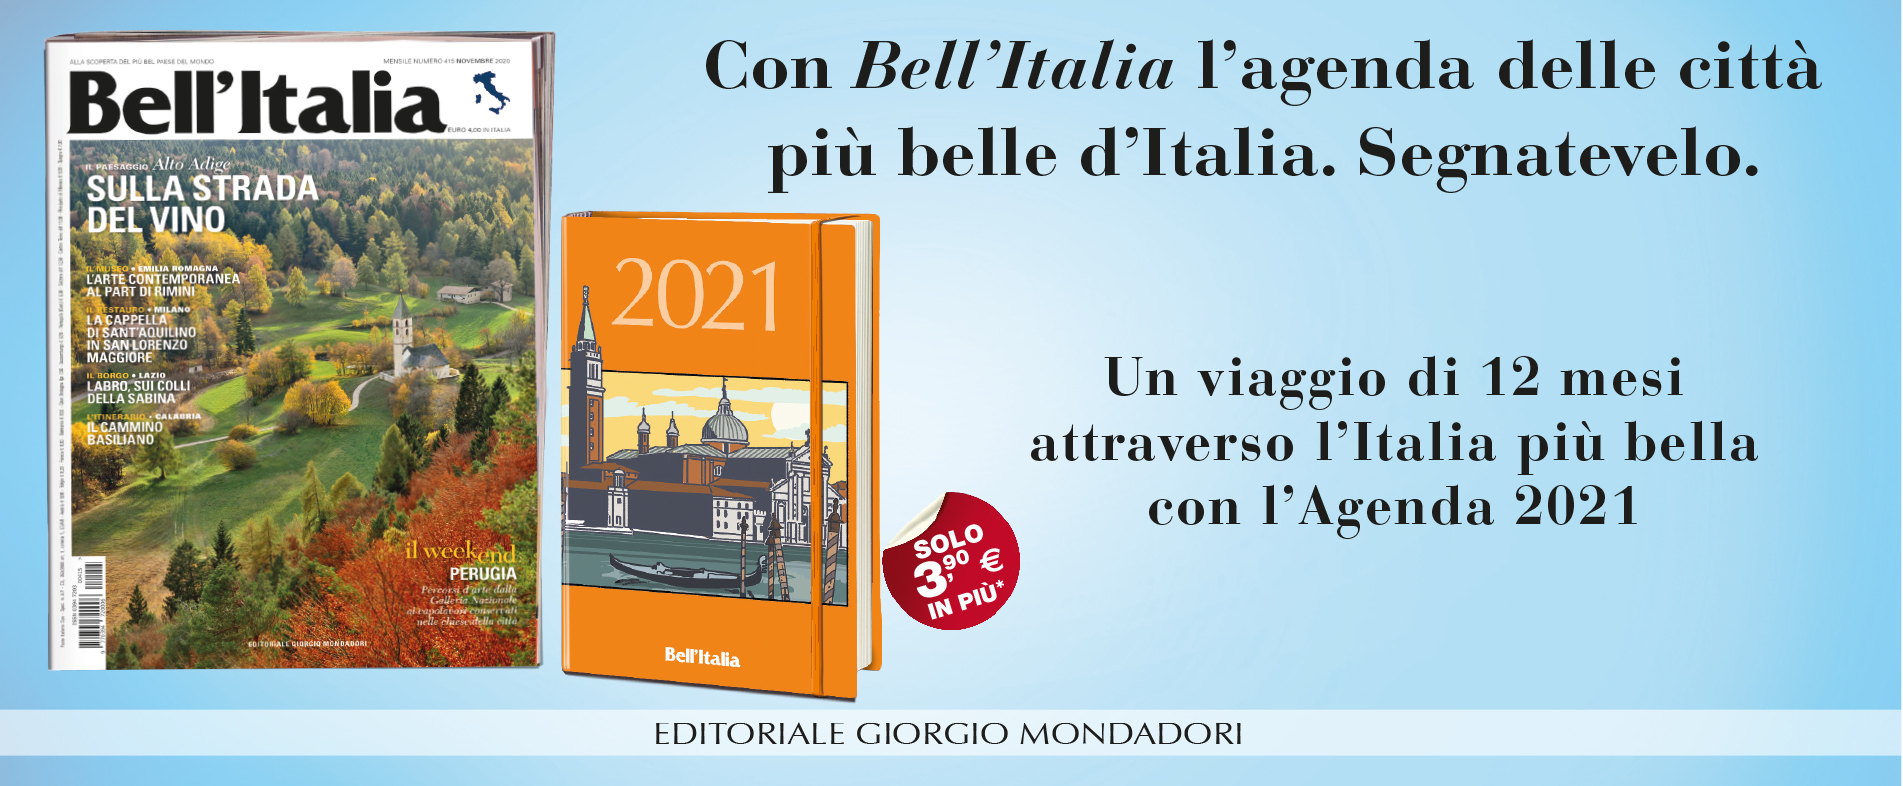 Con Bell'Italia l'agenda delle città più belle d'Italia. Segnatevelo.